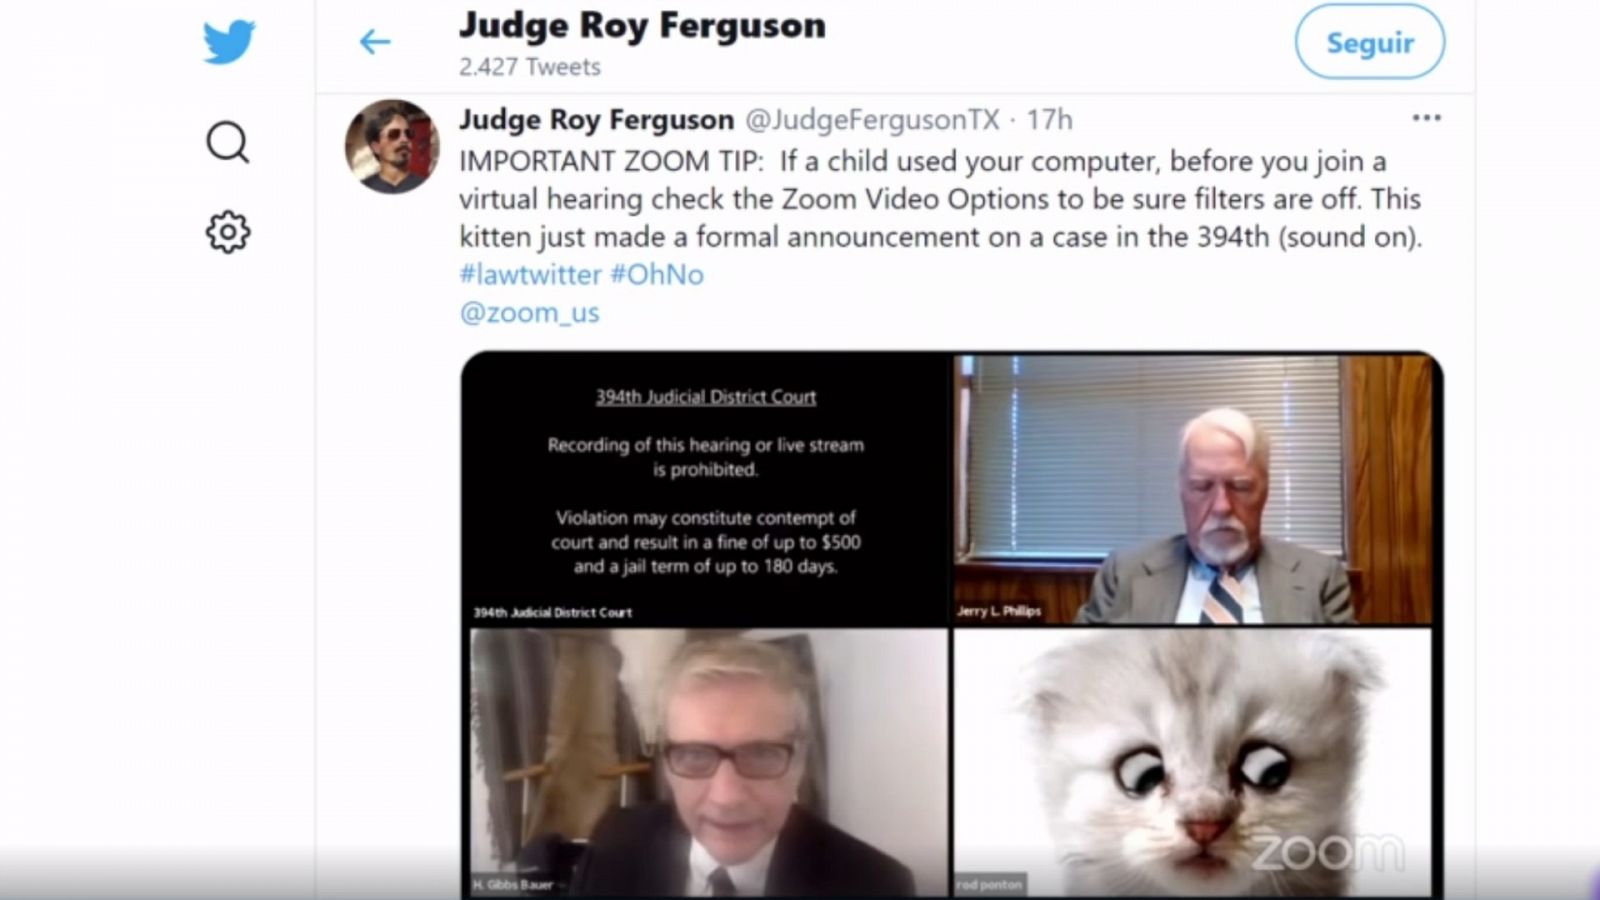 Los inconvenientes del teletrabajo: un juez se olvida de quitar un filtro en una videoconferencia y aparece con cara de gato